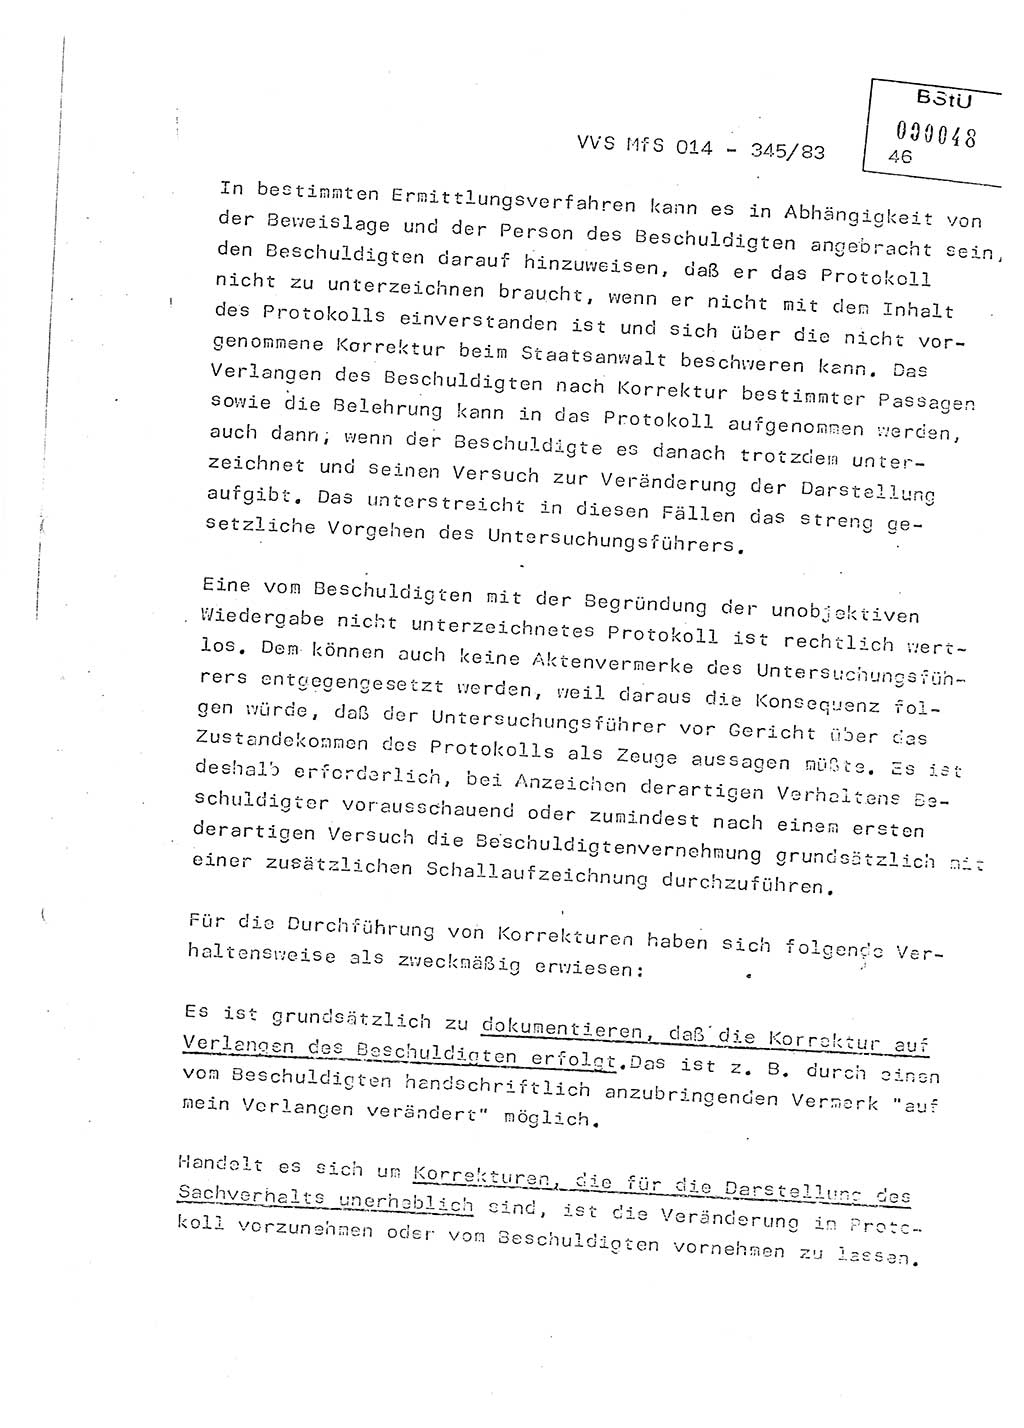 Lektion Ministerium für Staatssicherheit (MfS) [Deutsche Demokratische Republik (DDR)], Hauptabteilung (HA) Ⅸ, Vertrauliche Verschlußsache (VVS) o014-345/83, Berlin 1983, Seite 45 (Lekt. MfS DDR HA Ⅸ VVS o014-345/83 1983, S. 45)